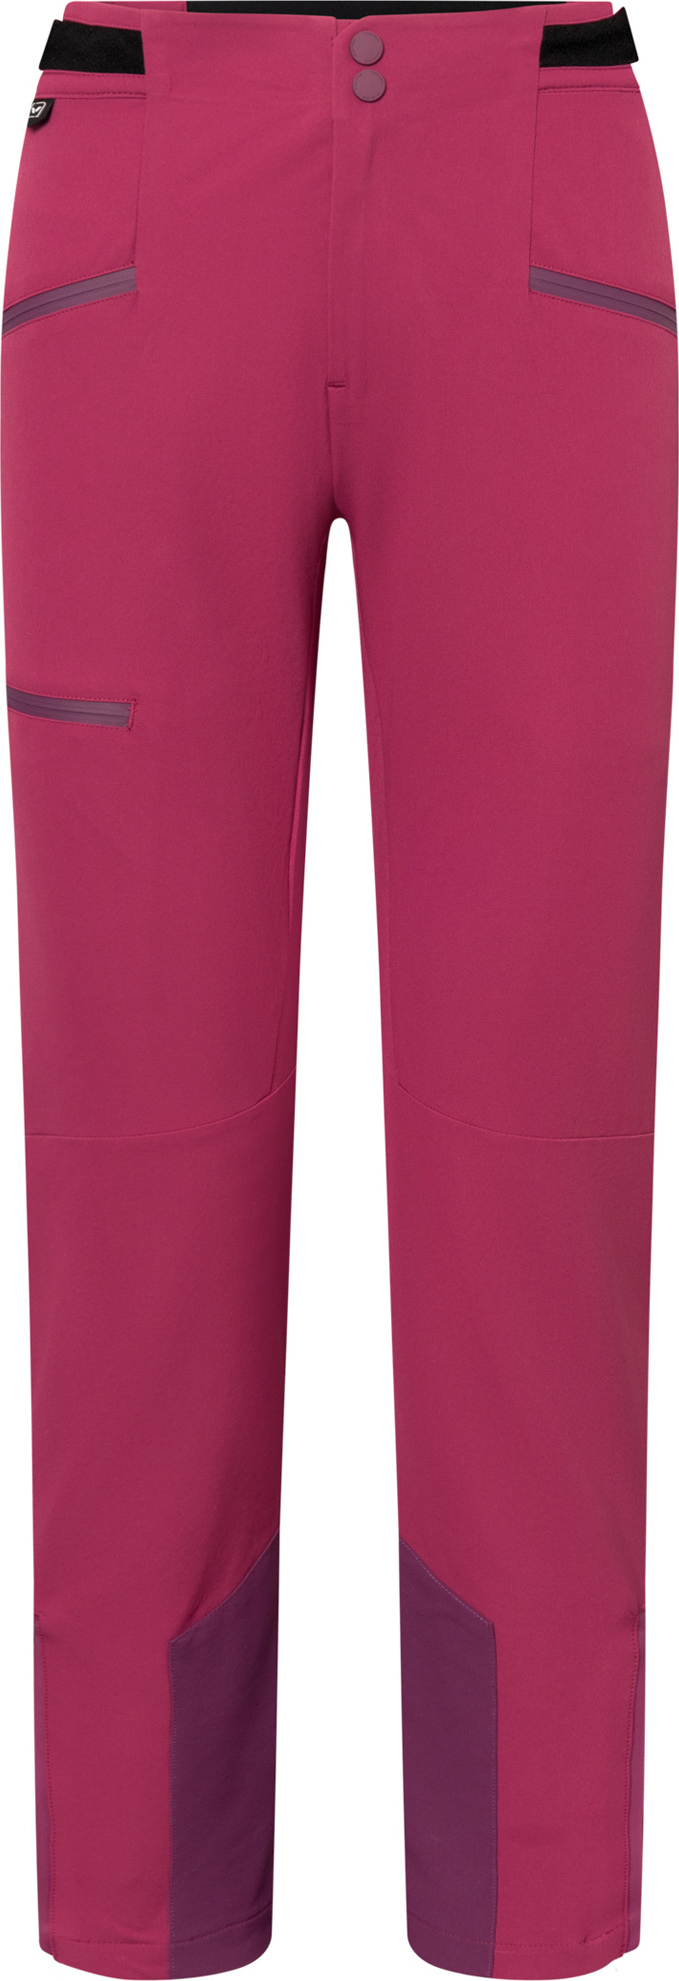 Dámské outdoorové kalhoty VIKING Expander Warm fialová Velikost: S